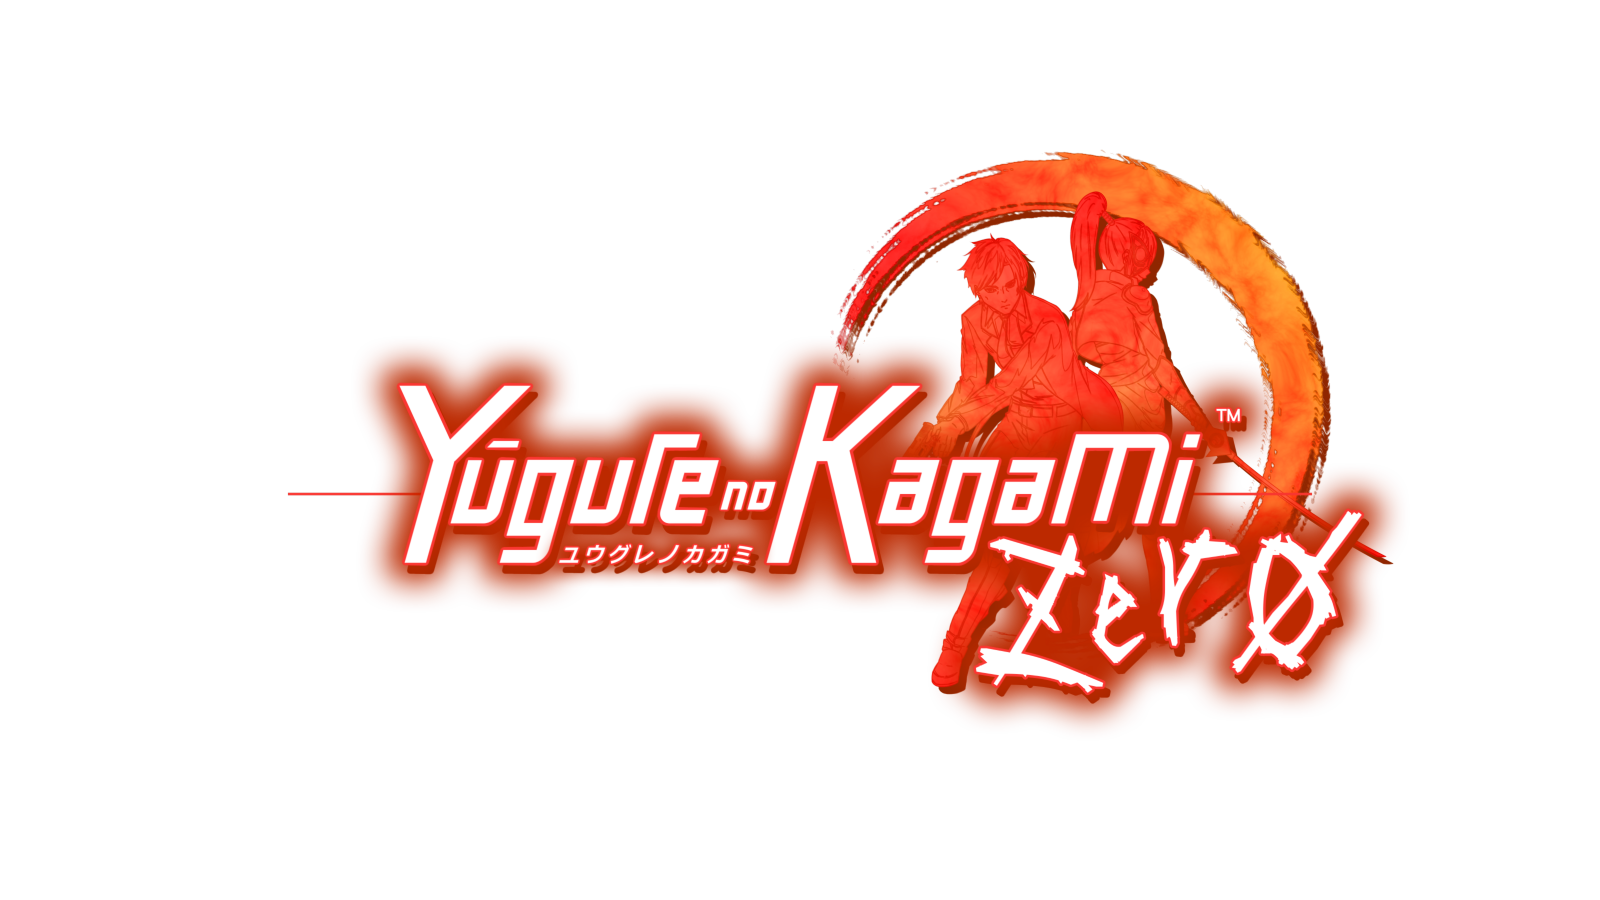 Yugure no Kagami ZERO